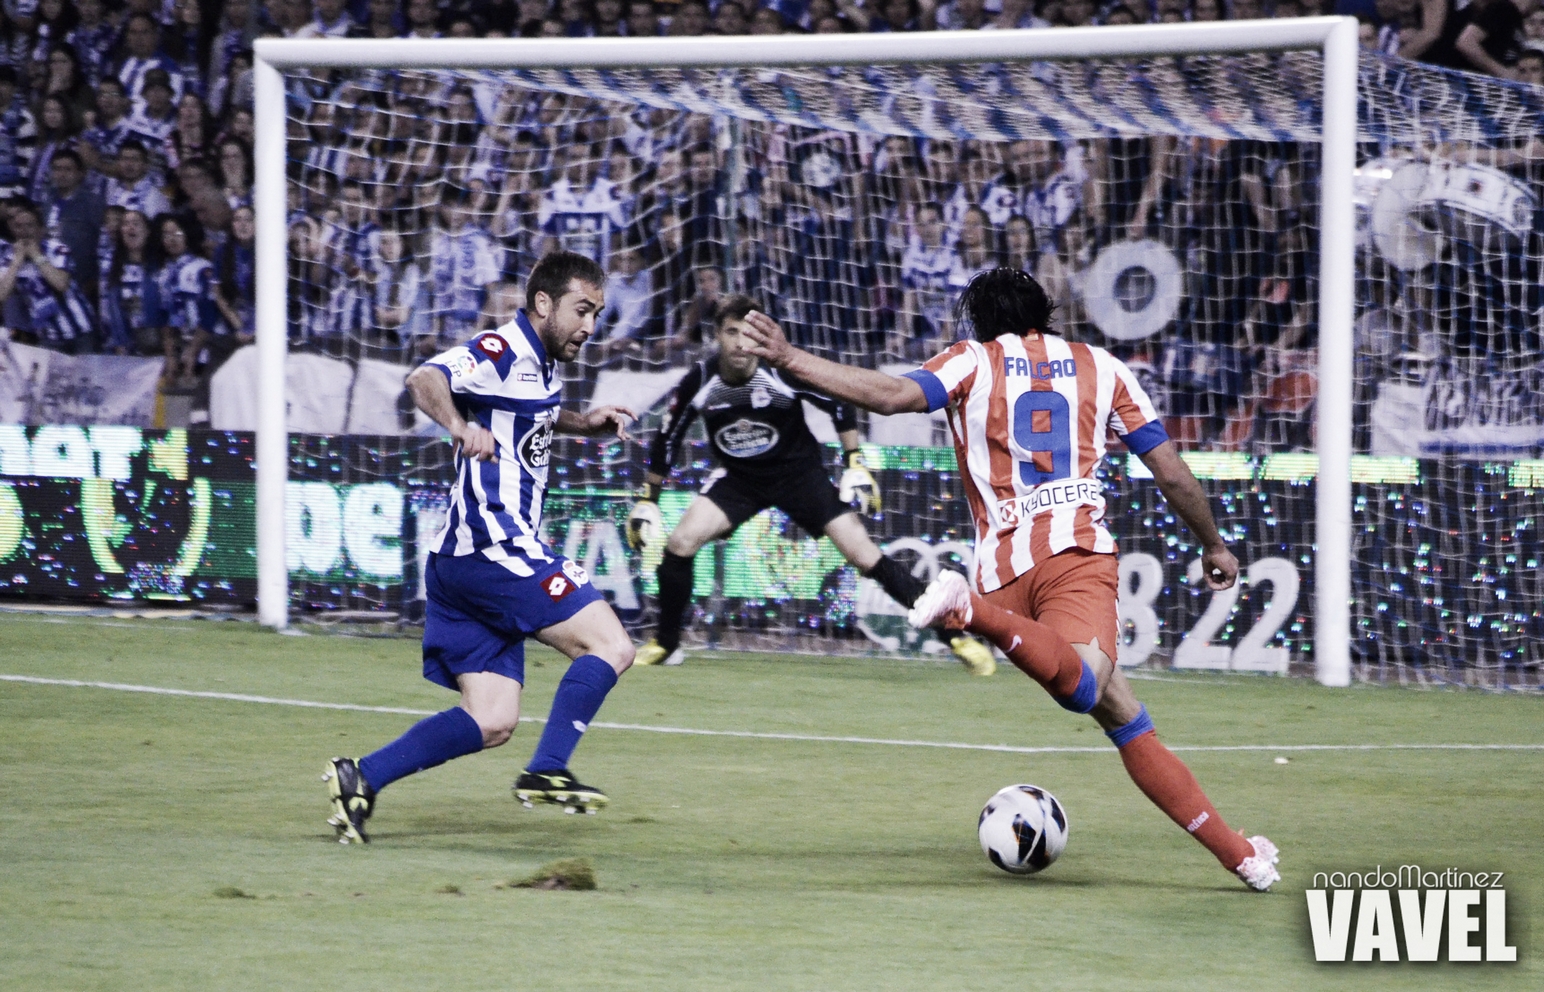 Resumen temporada 2012/13 del Deportivo de A Coruña: estadísticas